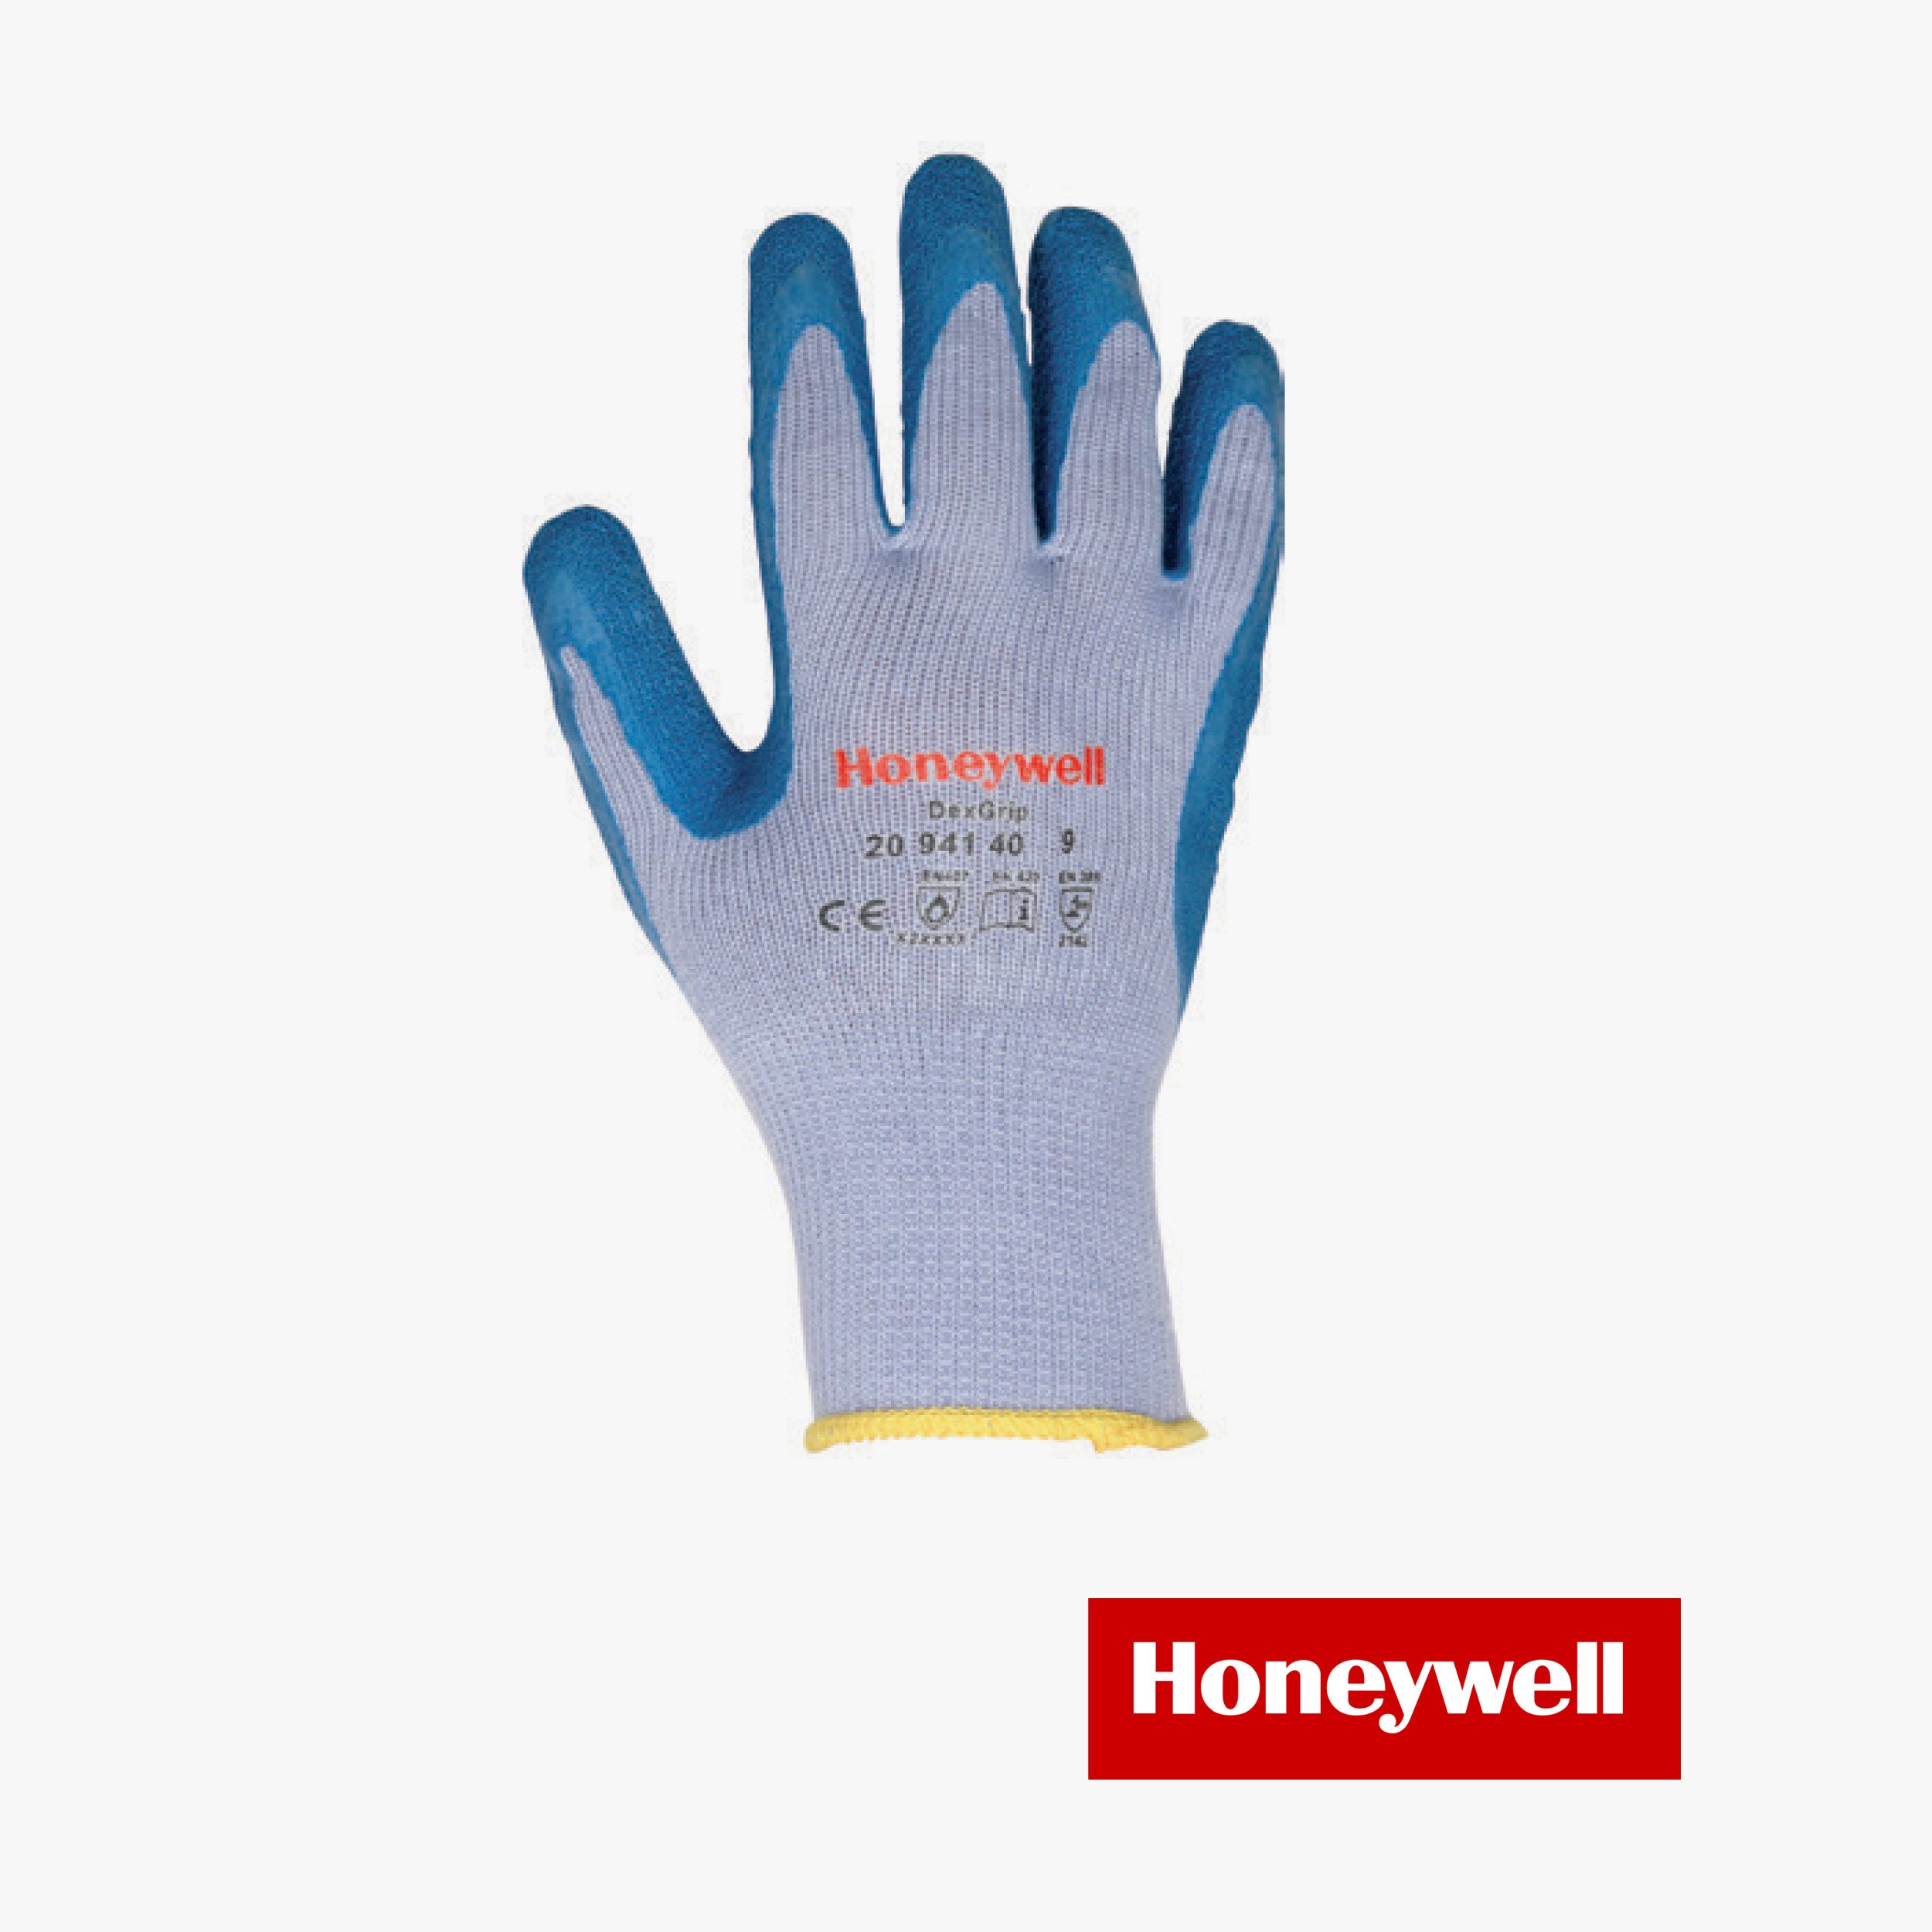 Gloves dexgrip 2094140 blue rubber size (10/8/9)